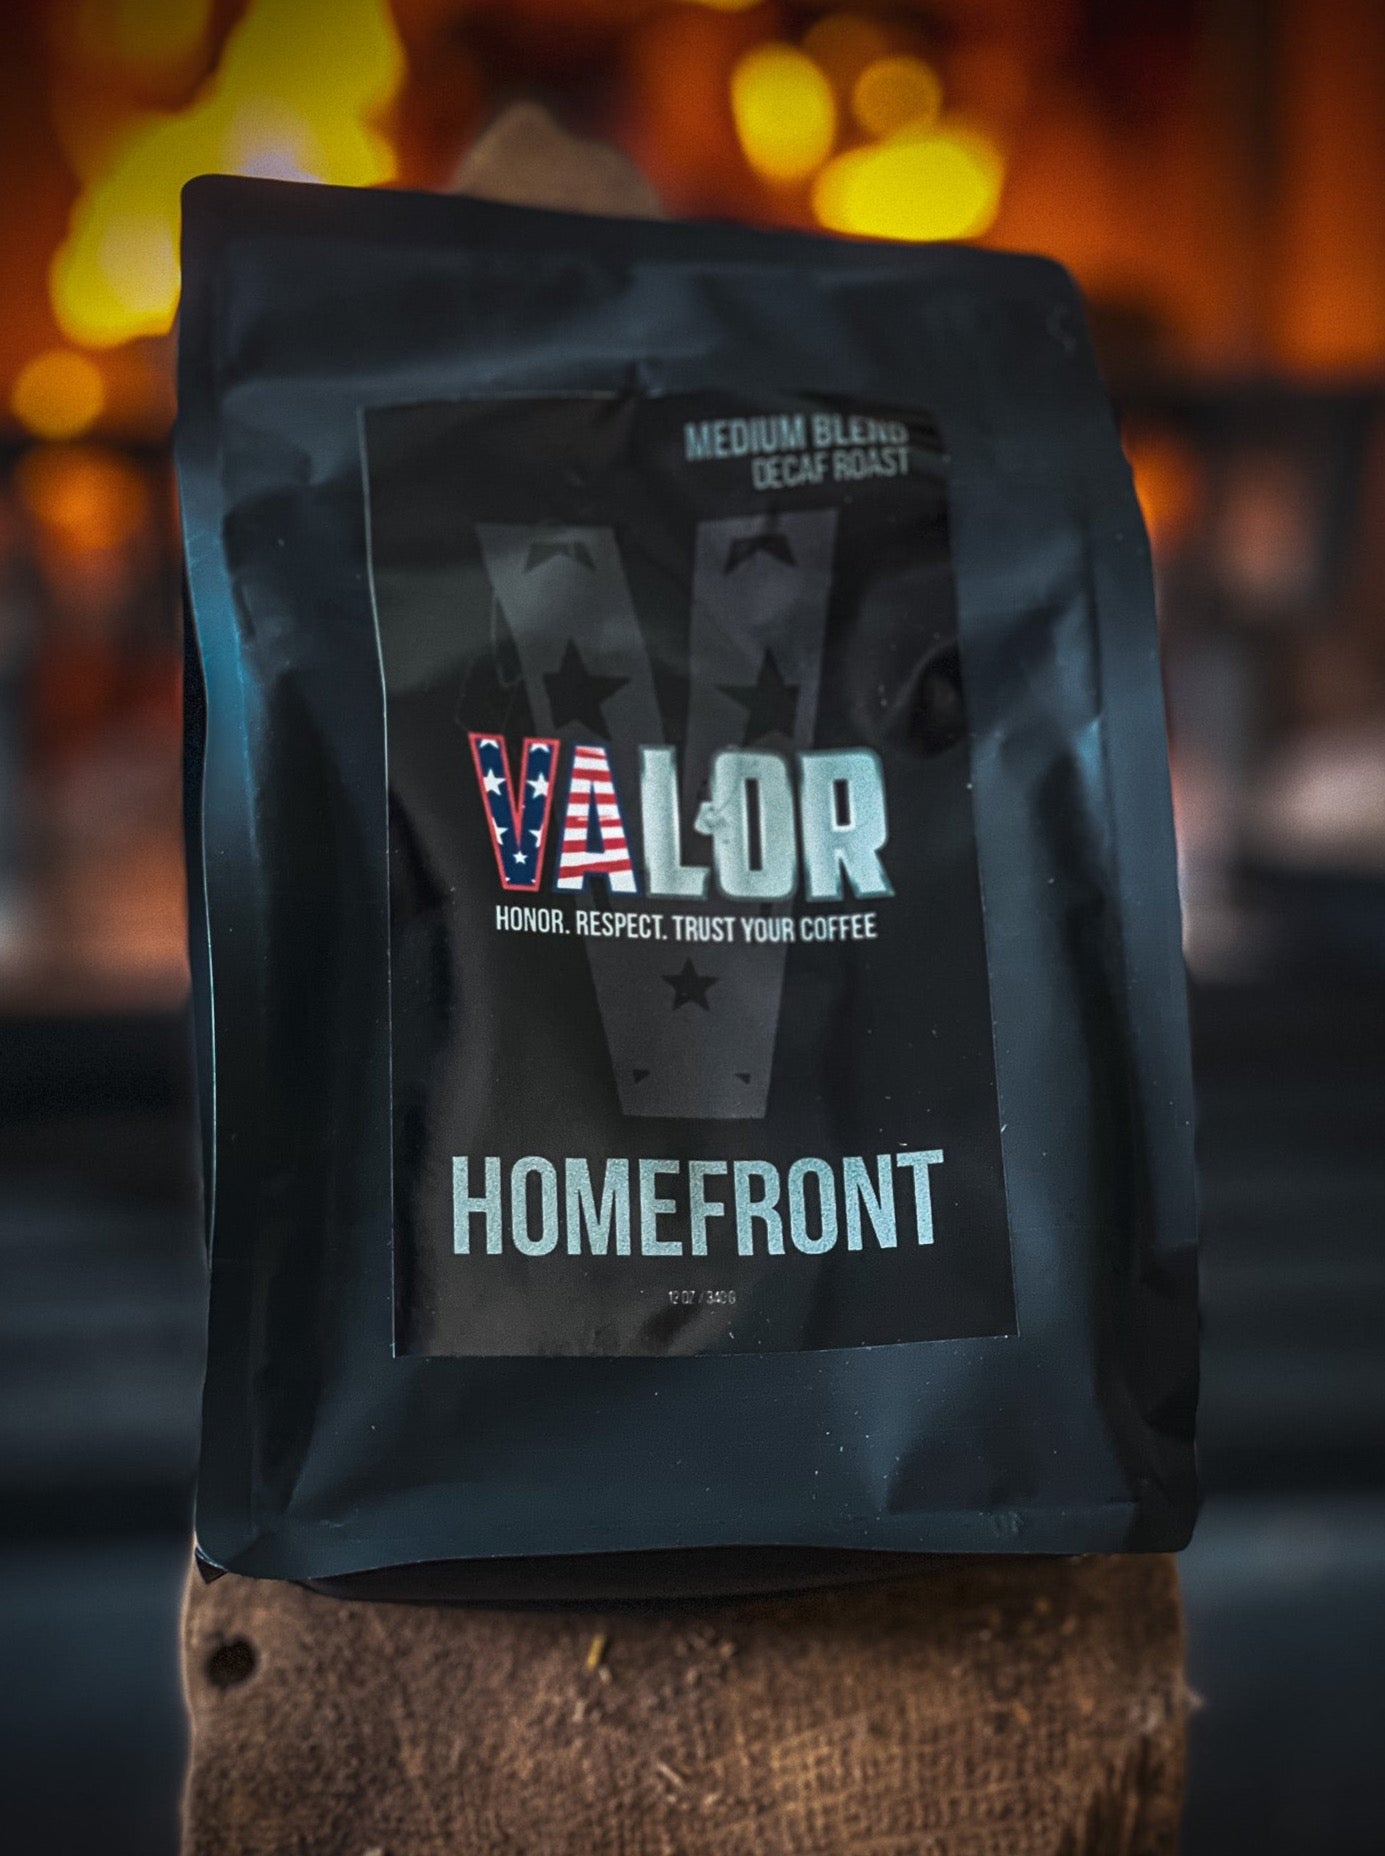 HOMEFRONT - Medium Decaf Roast - Veteran Owned Coffee